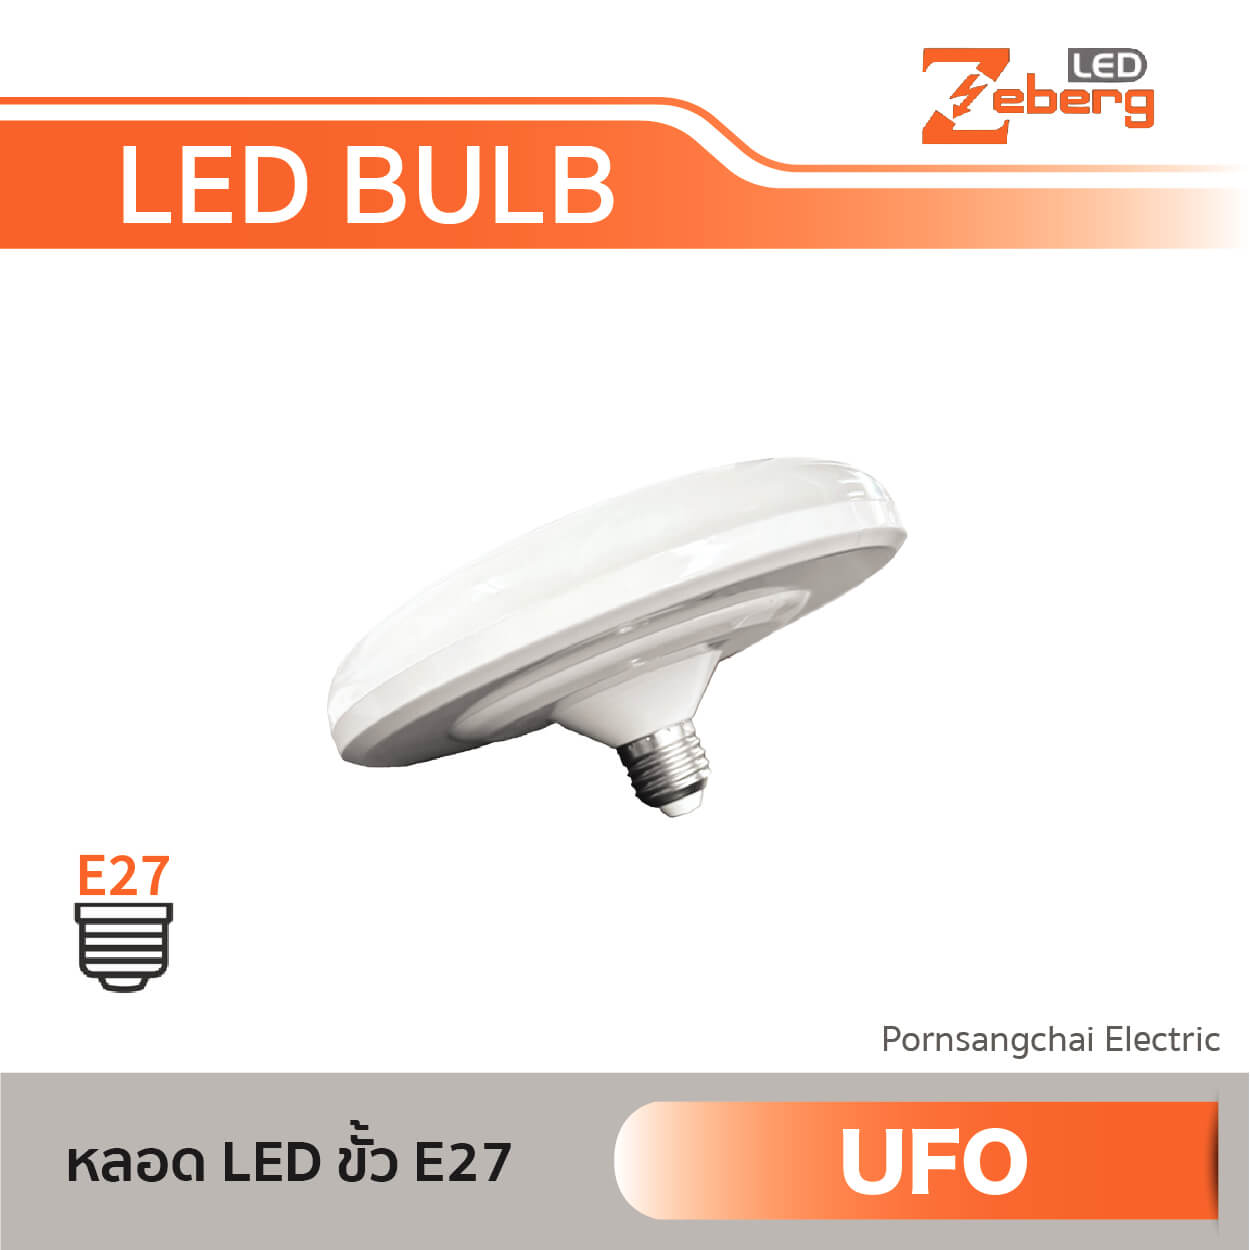 ZEBERG LED Bulb E27 UFO